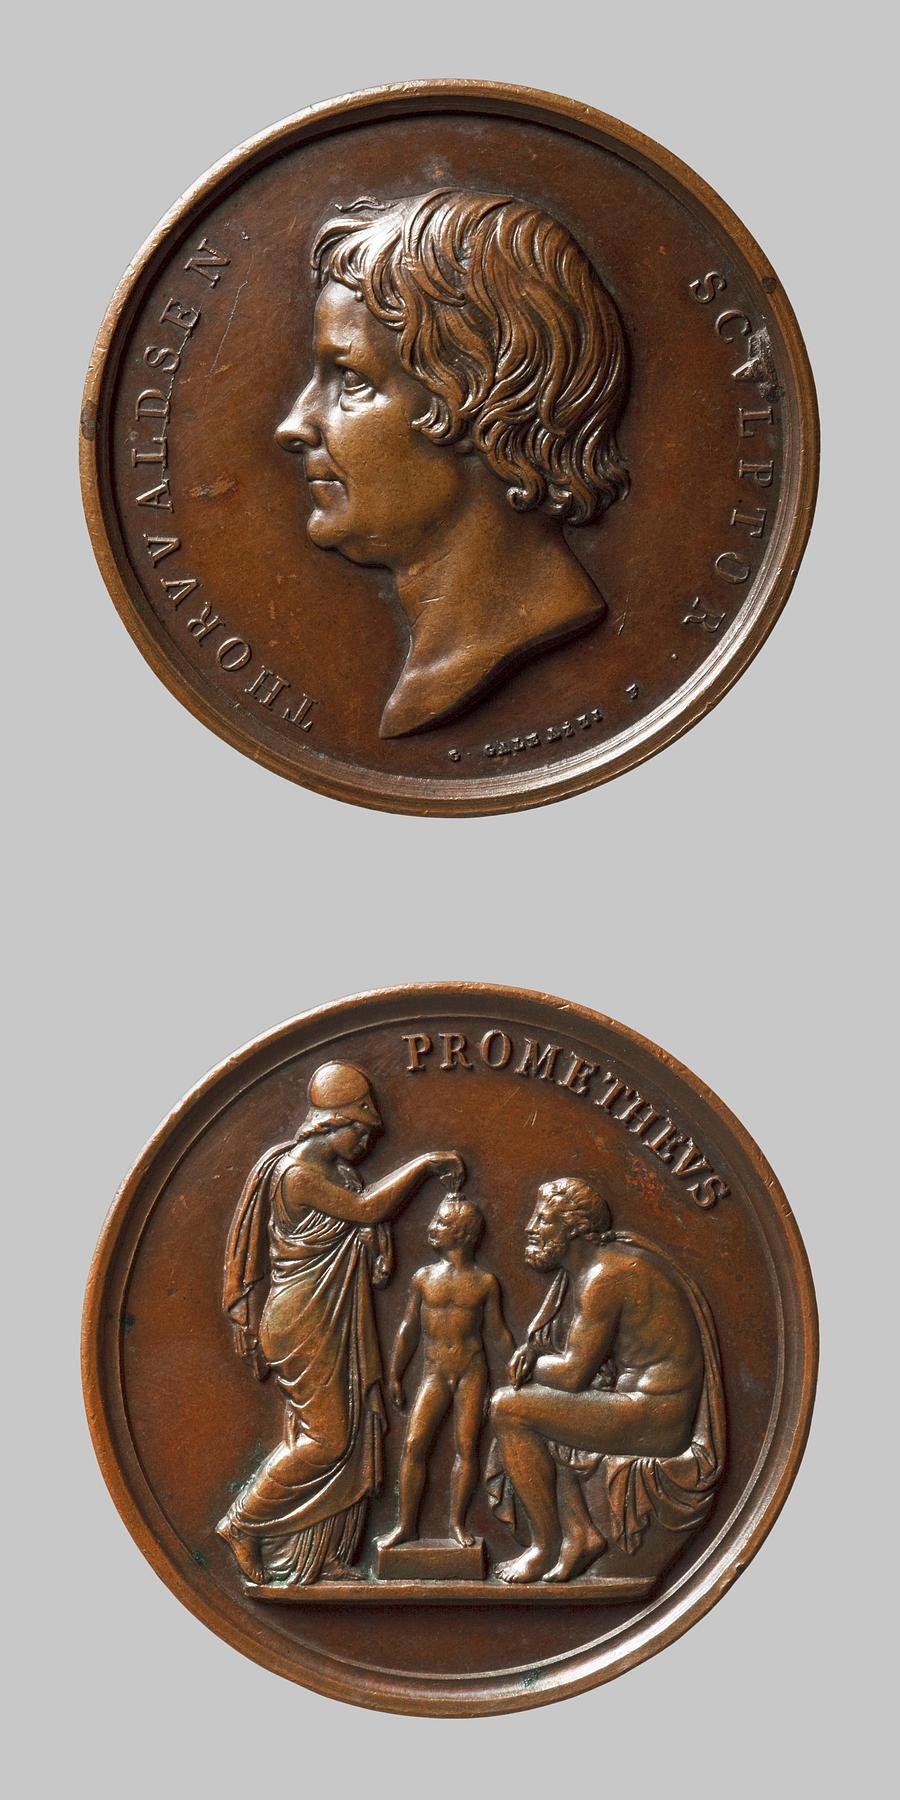 Medaljens forside: Portræt af Thorvaldsen. Medaljens bagside: Minerva og Prometheus, F148